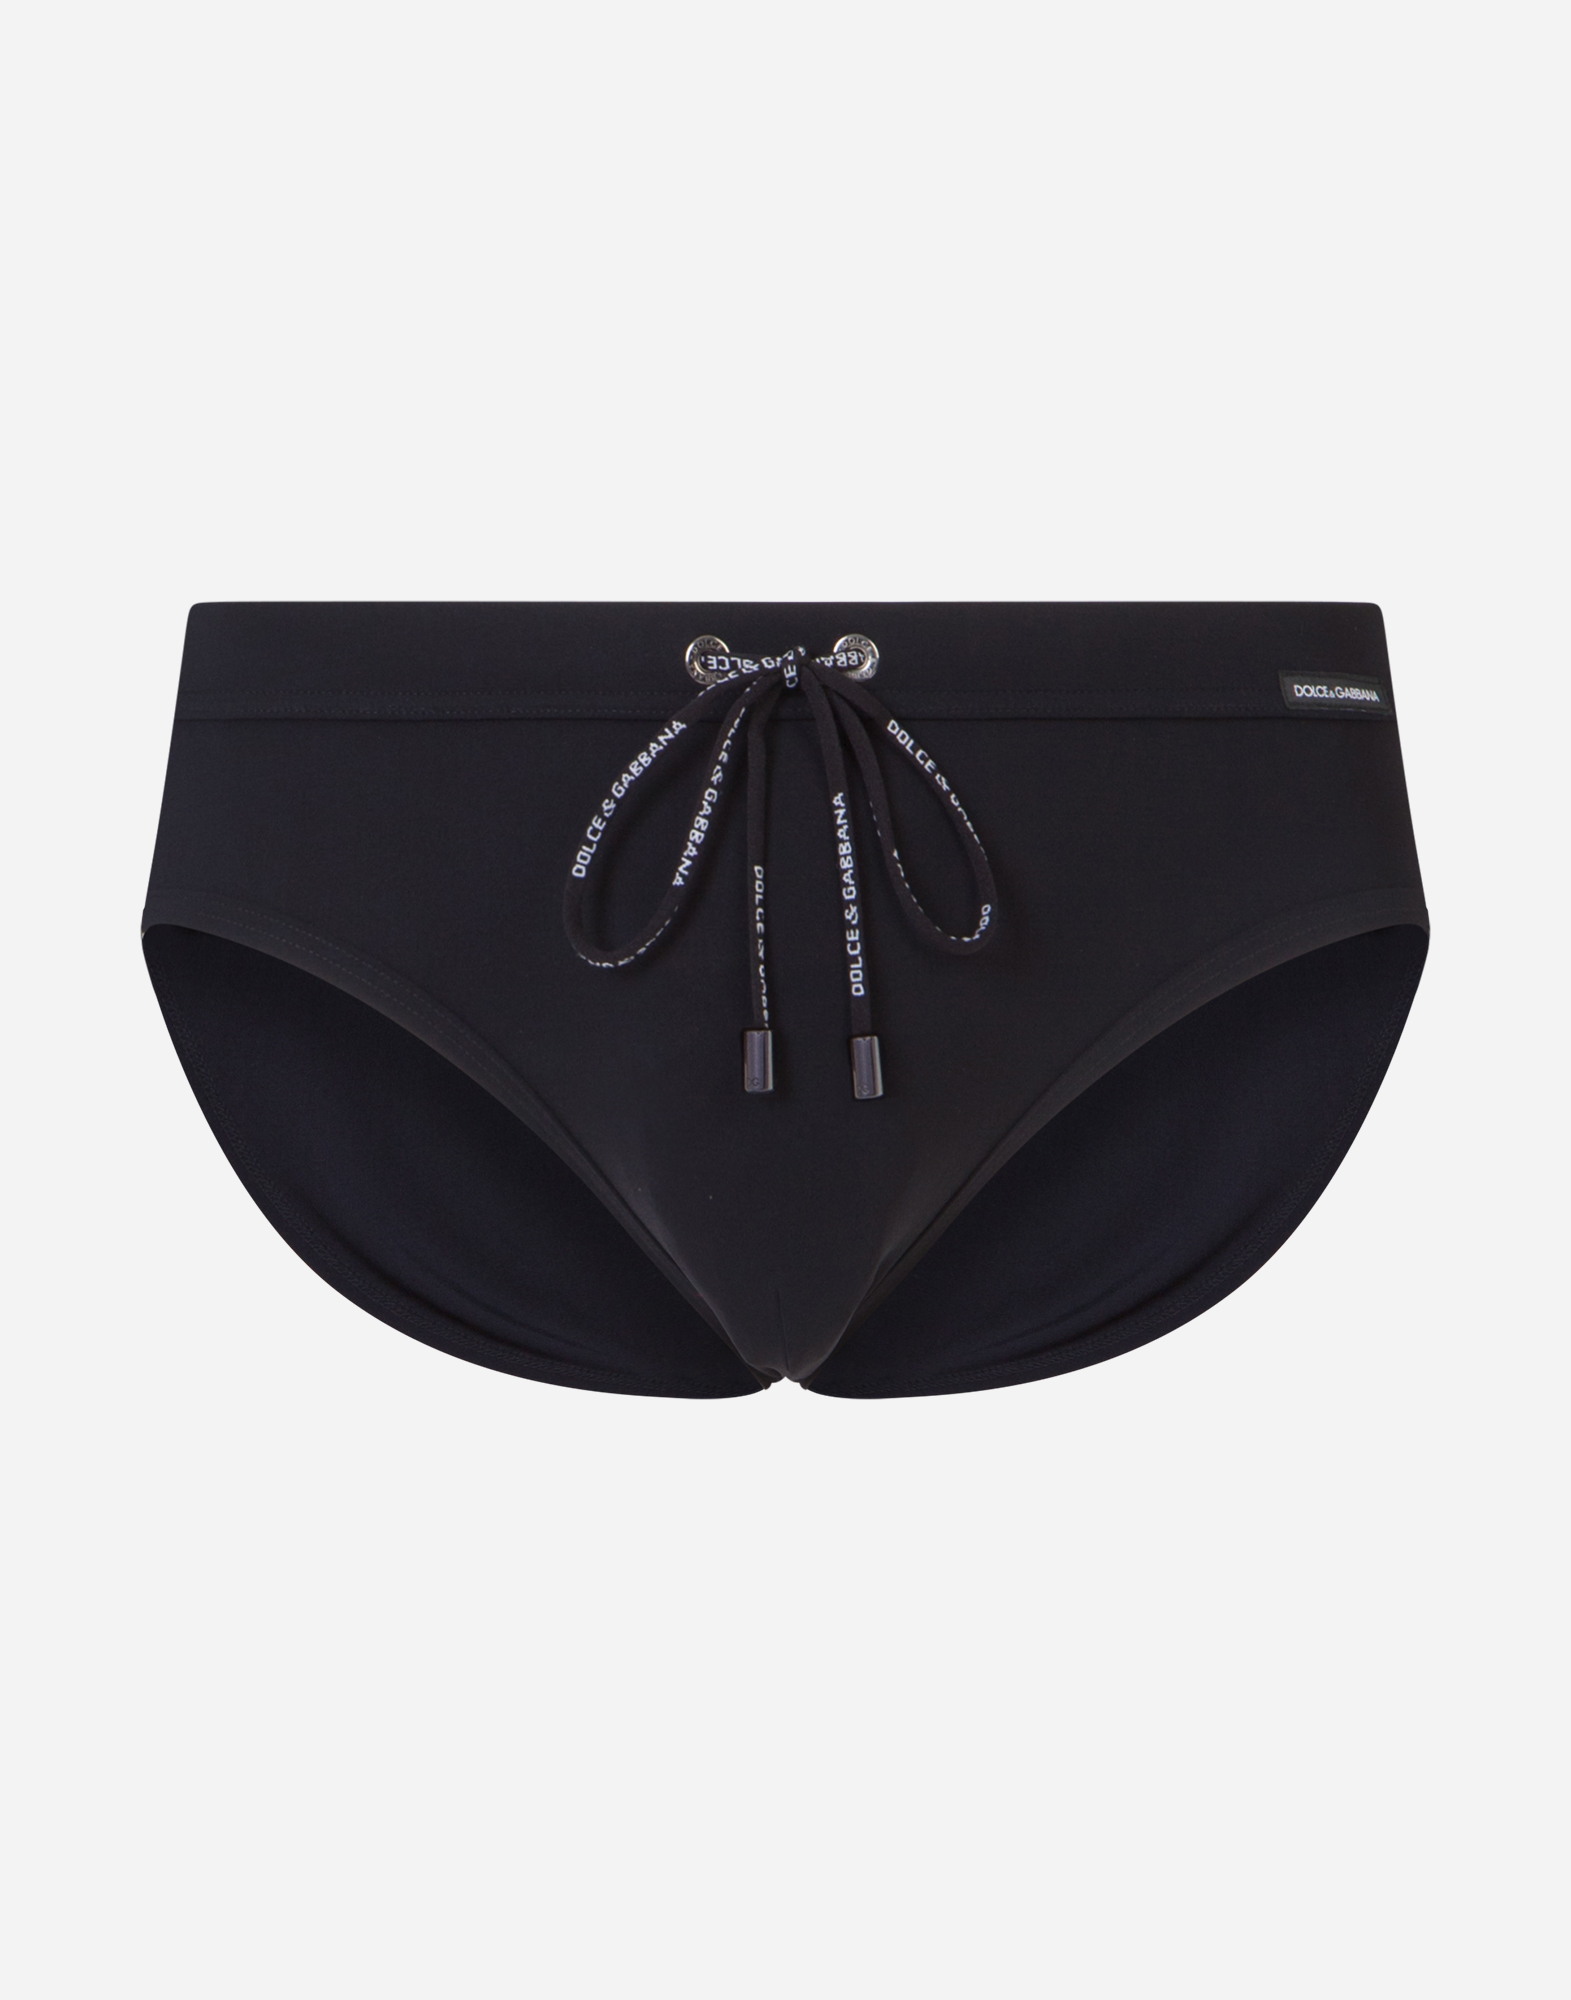 Dolce & Gabbana Dolce&gabbana Mantechnical Fabric Black Swimsuit